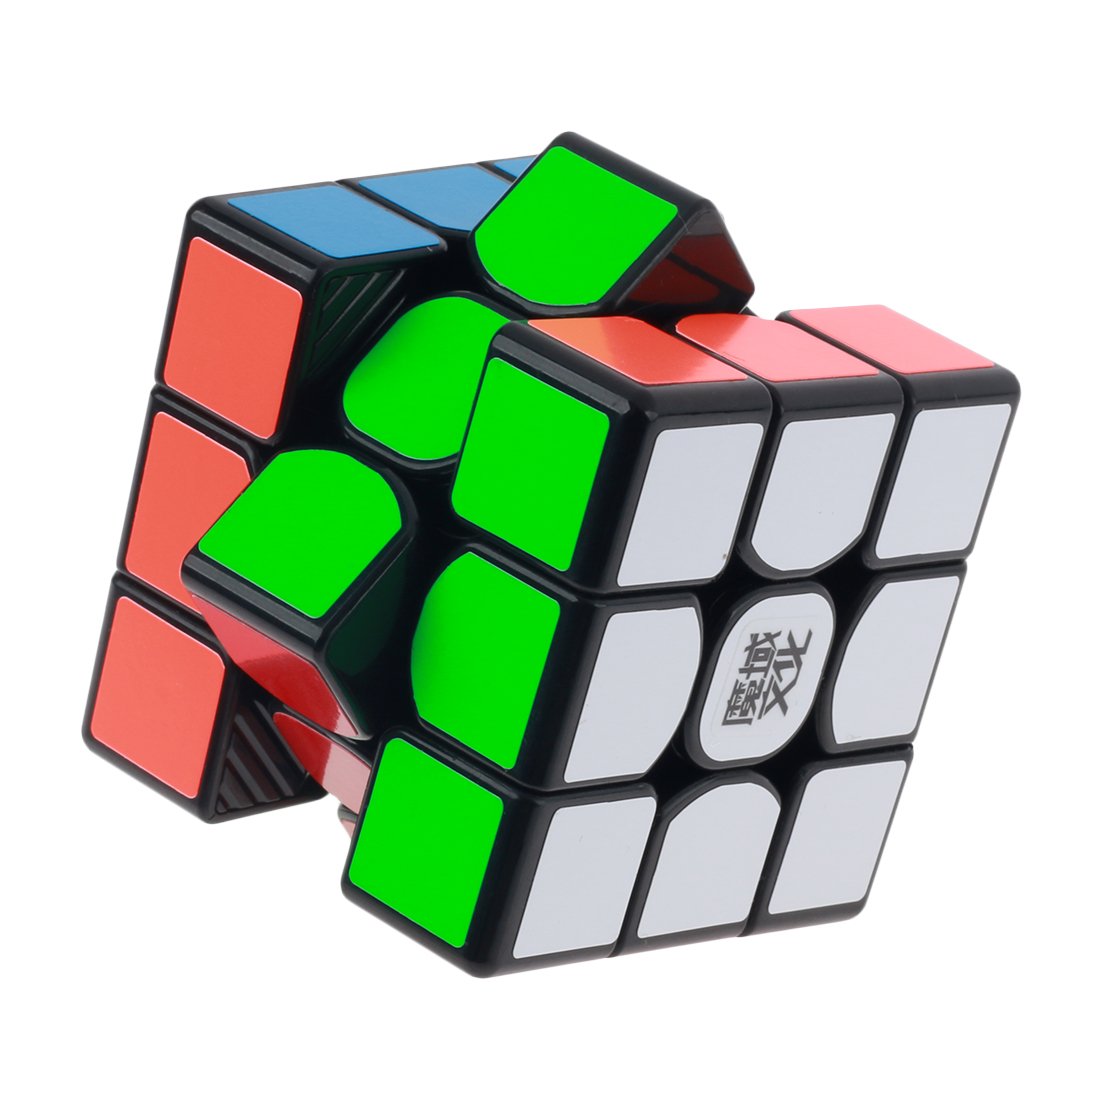 YJ8240 MoYu Weilong GTS 3x3x3 Magic Cube